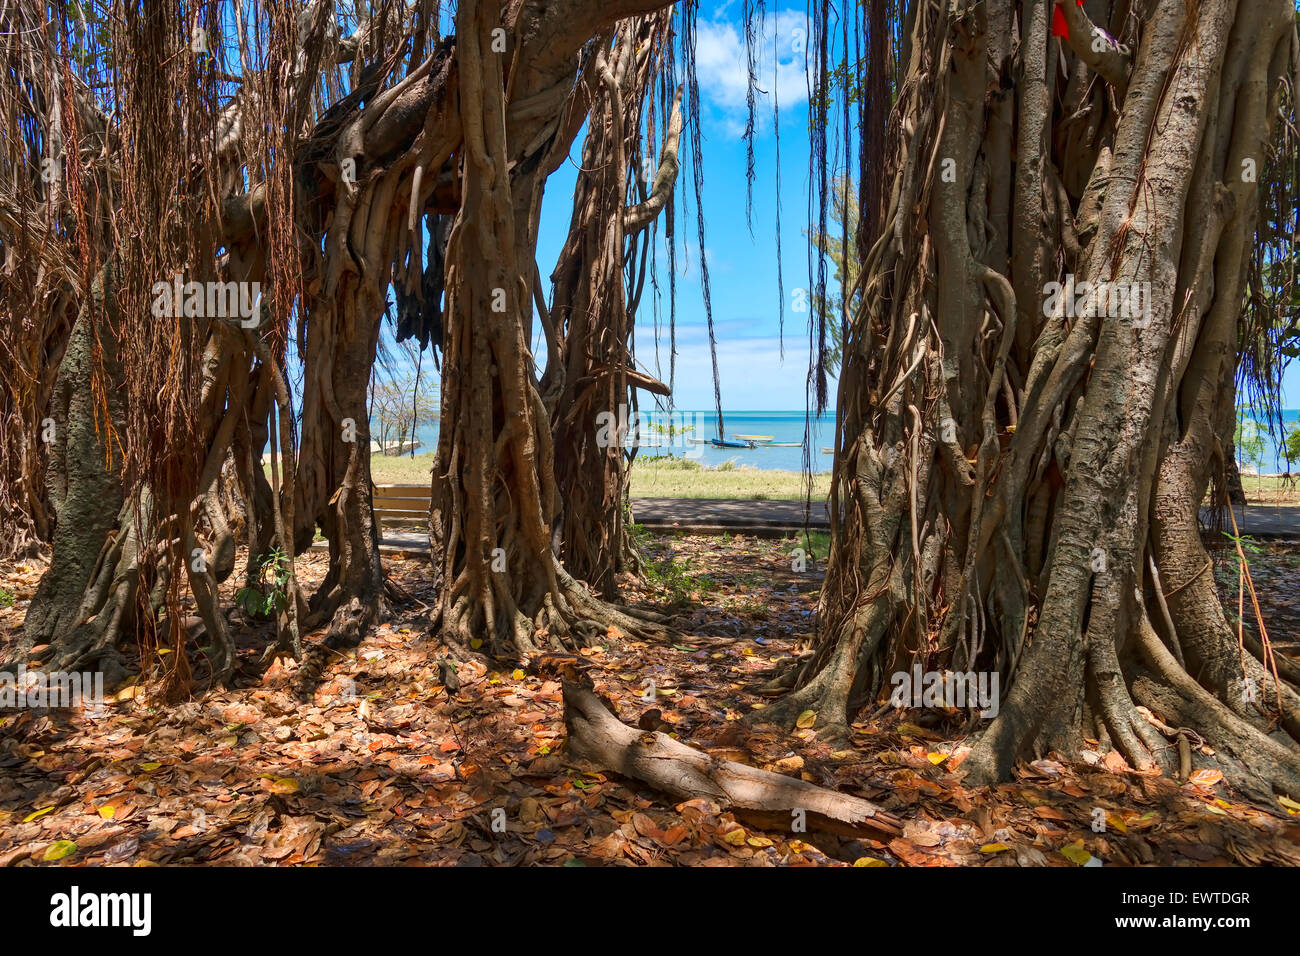 Würgefeigen (Banyan Tree, Ficus benghalensis) am Strand von Mauritius, Indischer Ozean Stock Photo